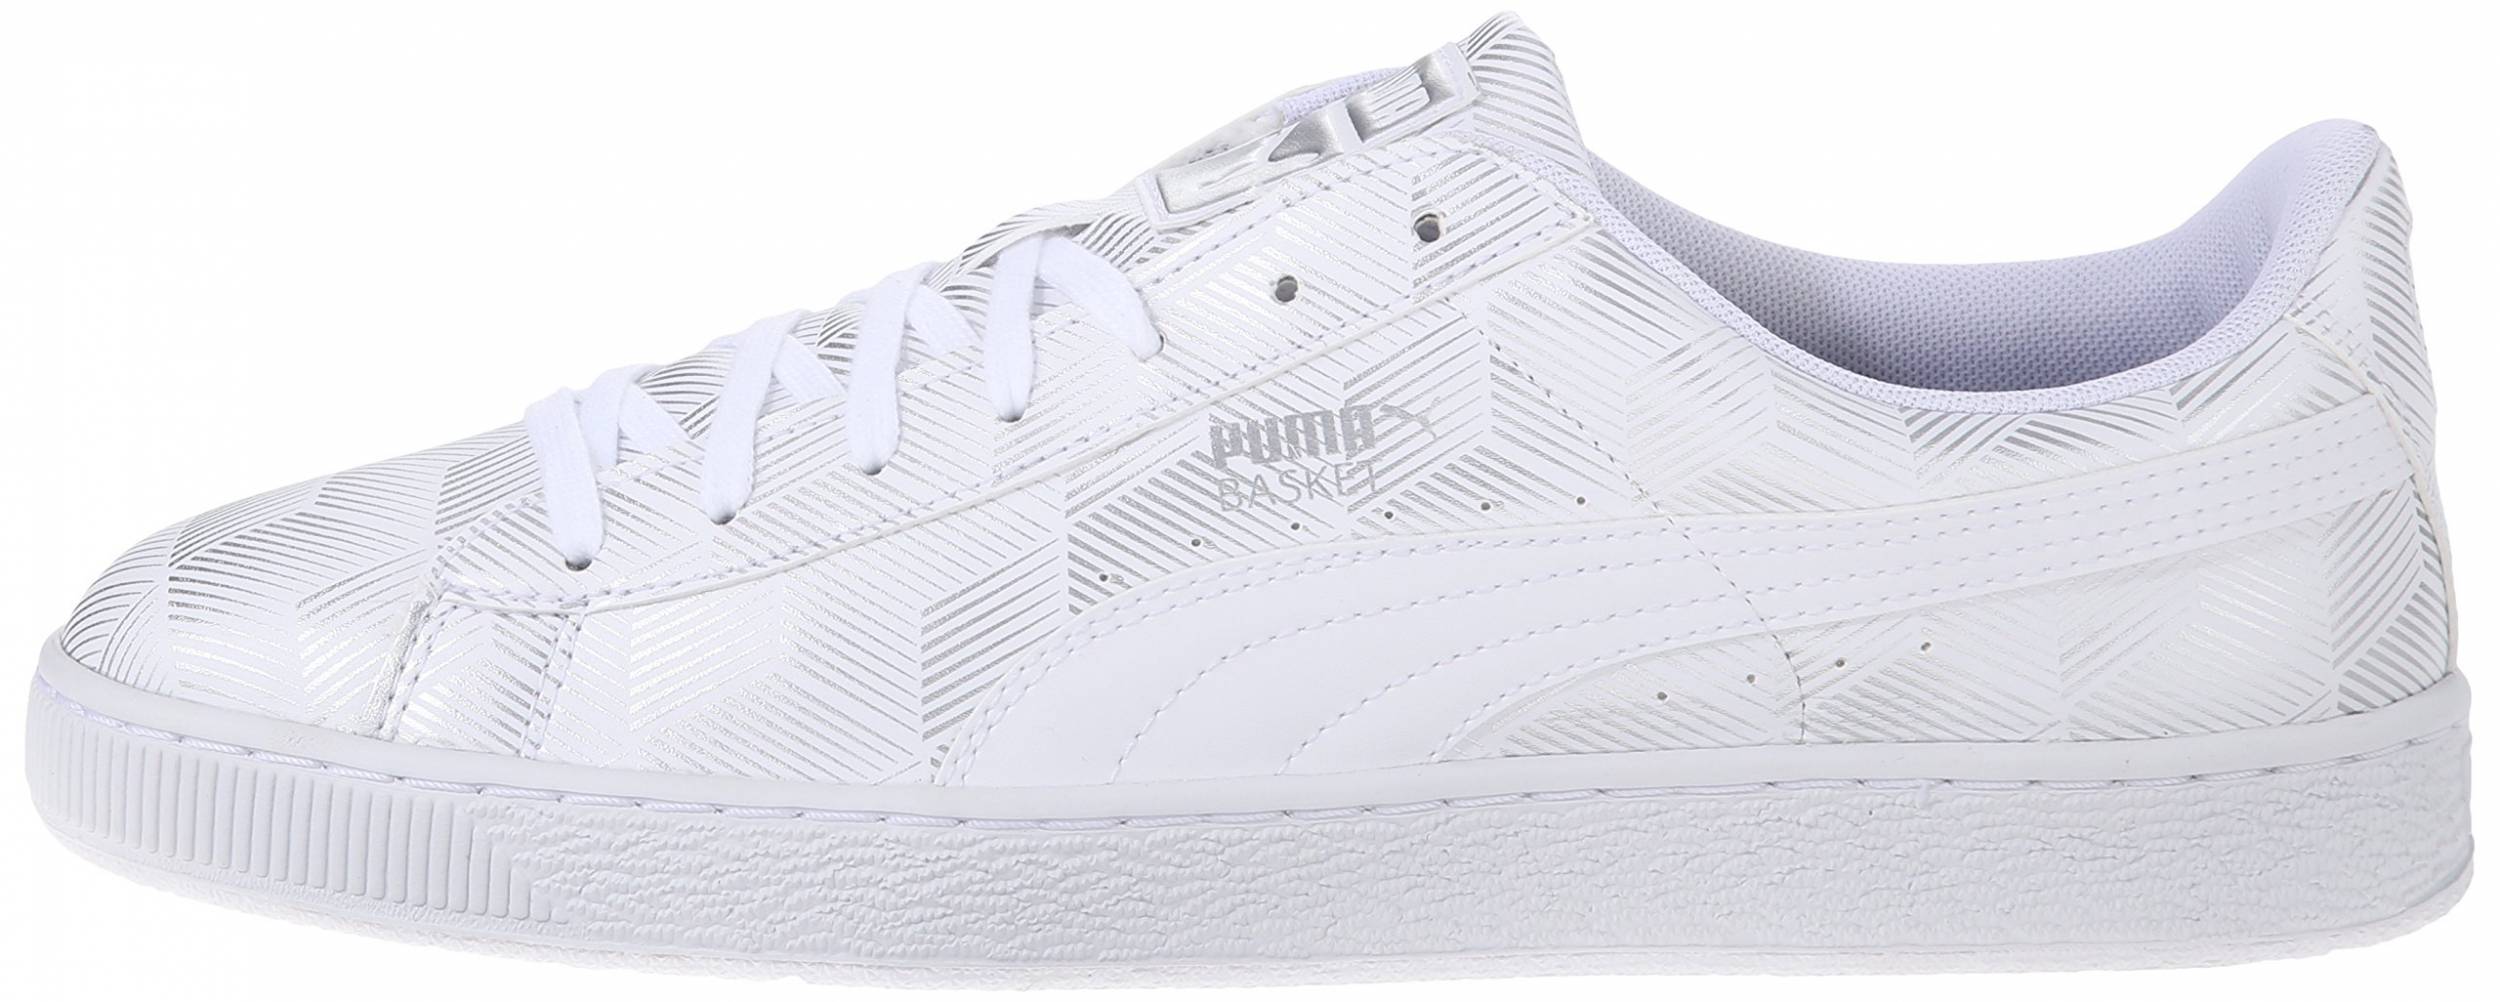 puma basket classic white review